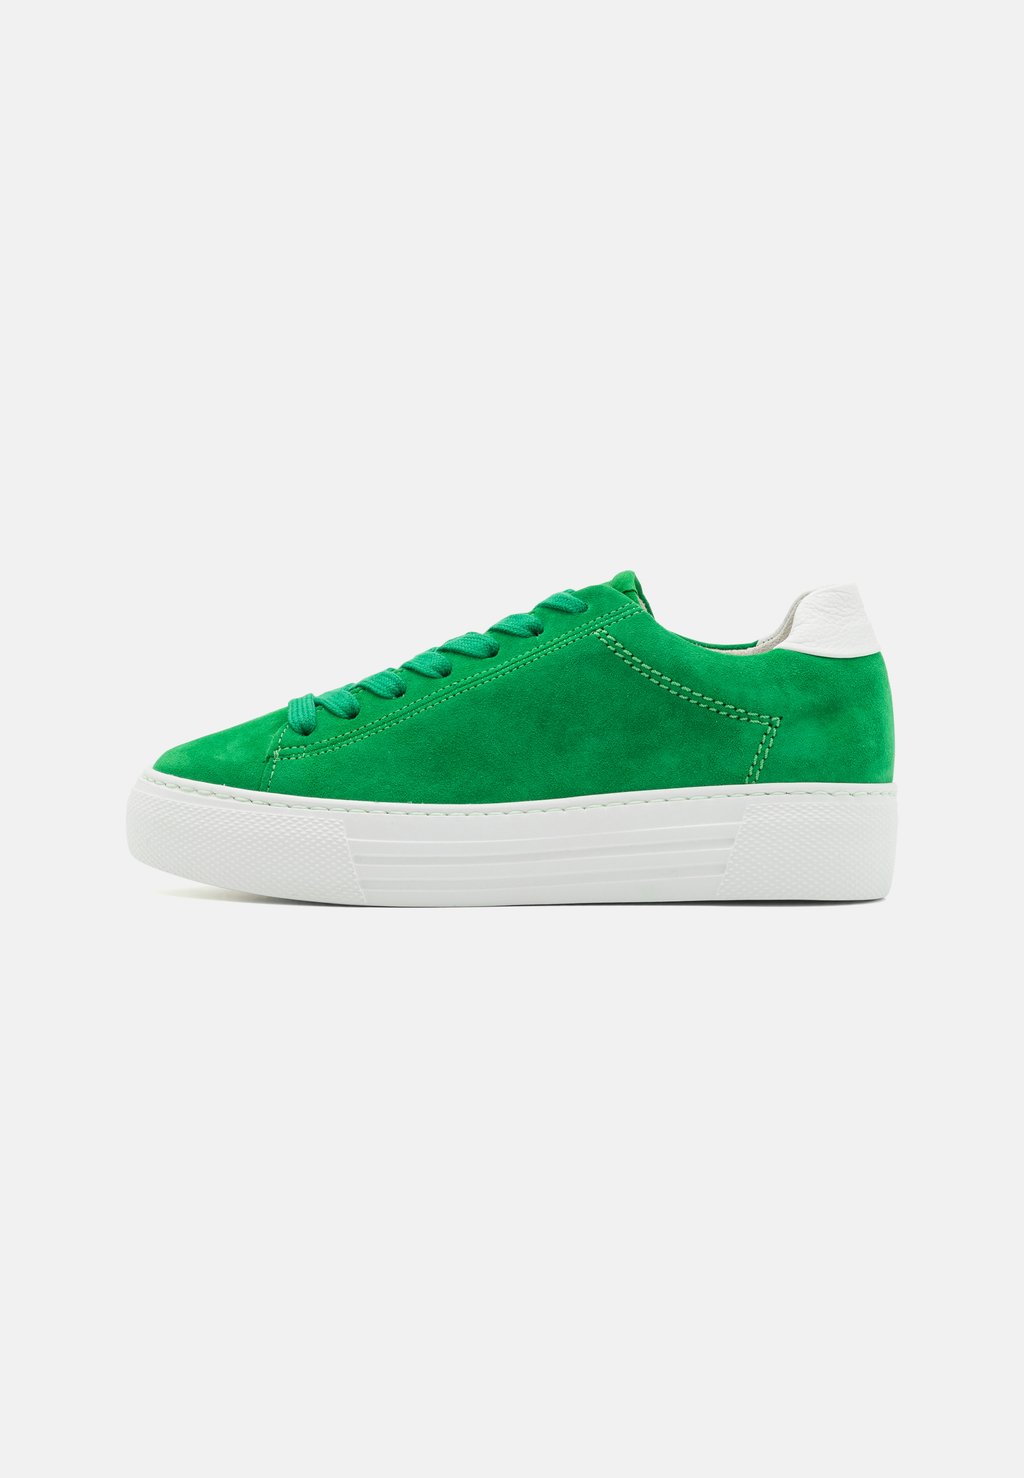 Низкие кроссовки Gabor Comfort, зеленые